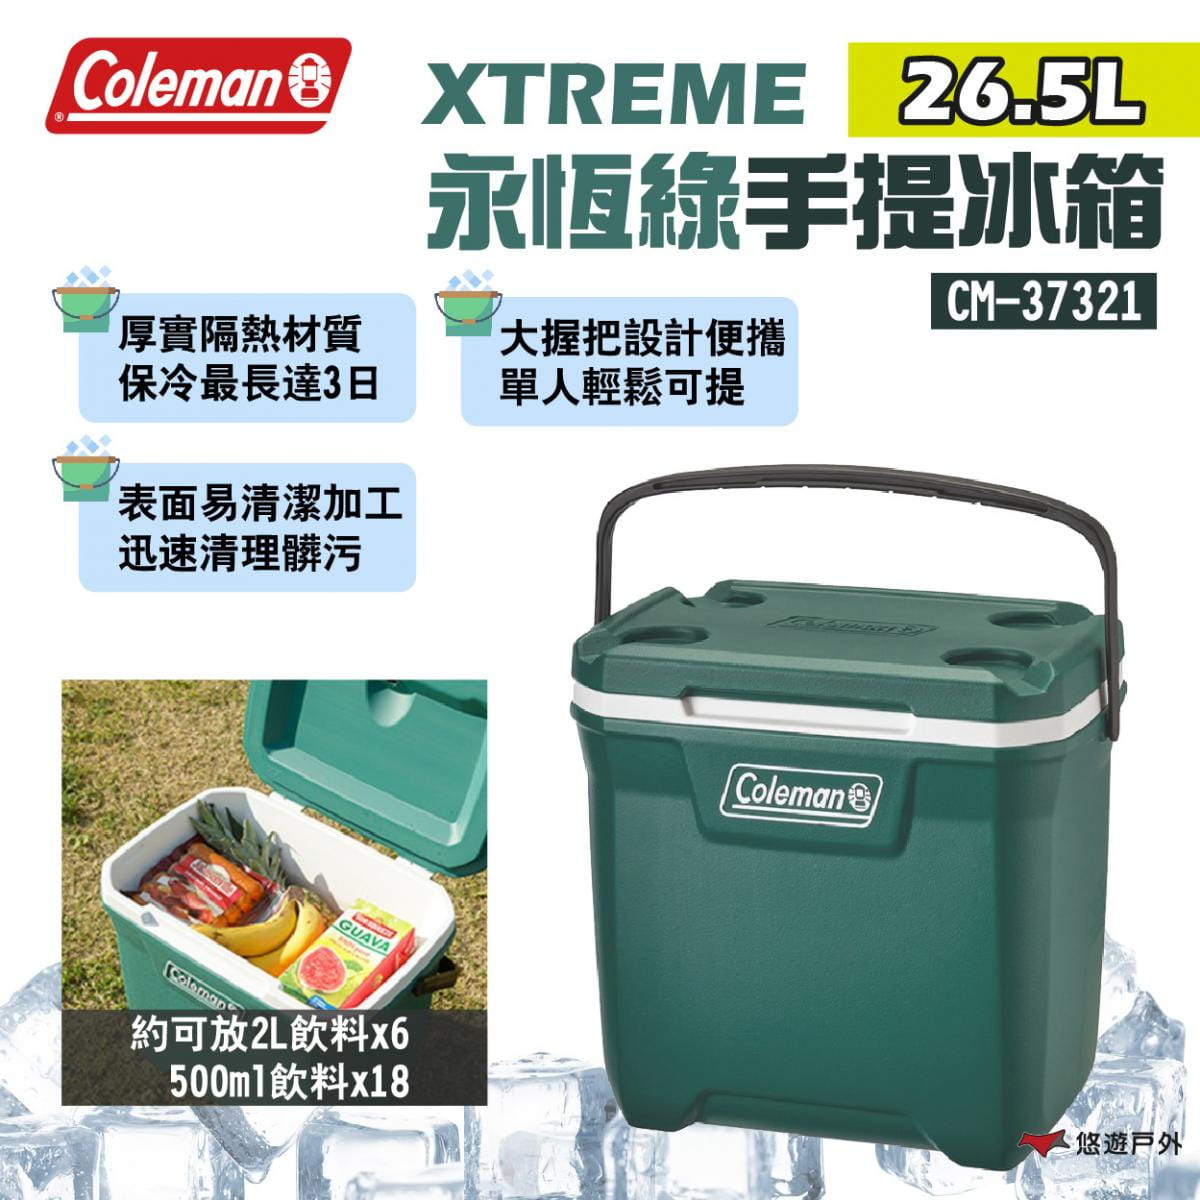 【Coleman】26.5L XTREME永恆綠手提冰箱 CM-37321 悠遊戶外 1